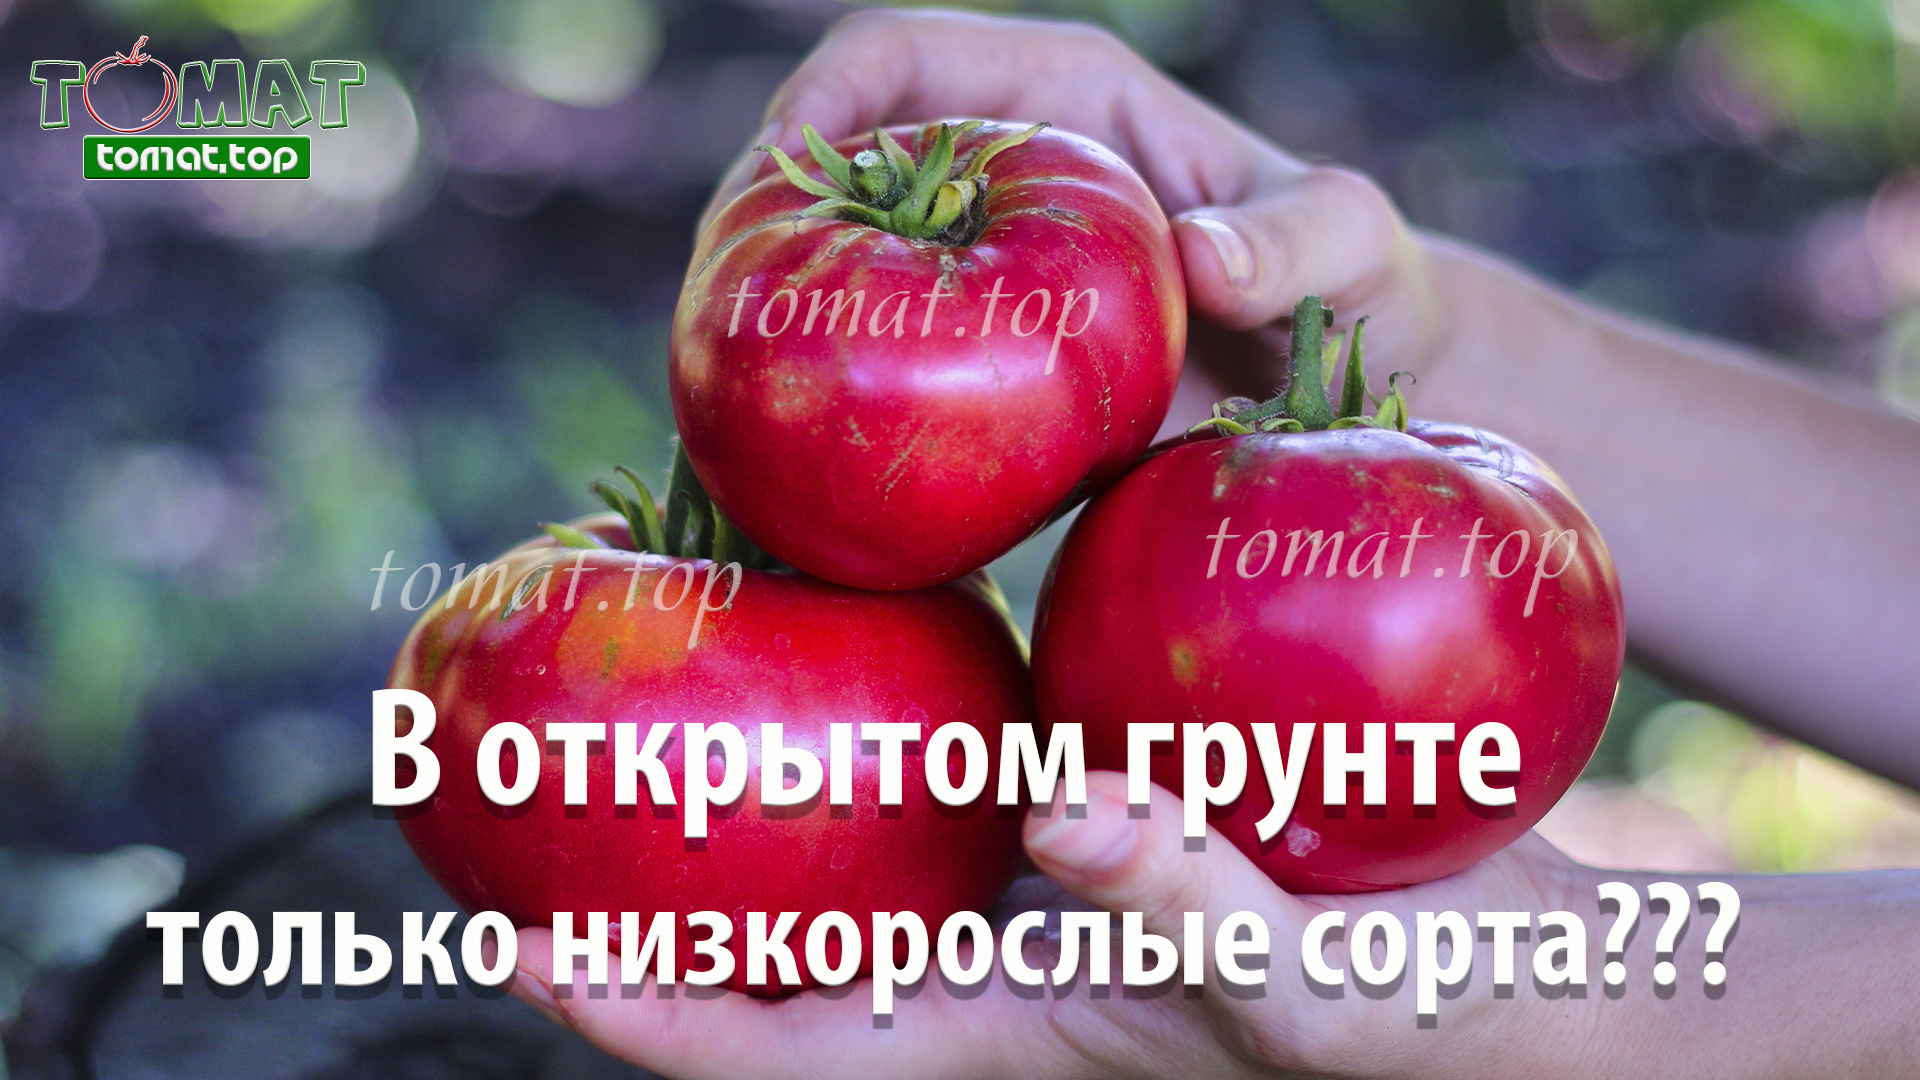 Какие томаты лучше выращивать в открытом грунте? Только низкорослые сорта?